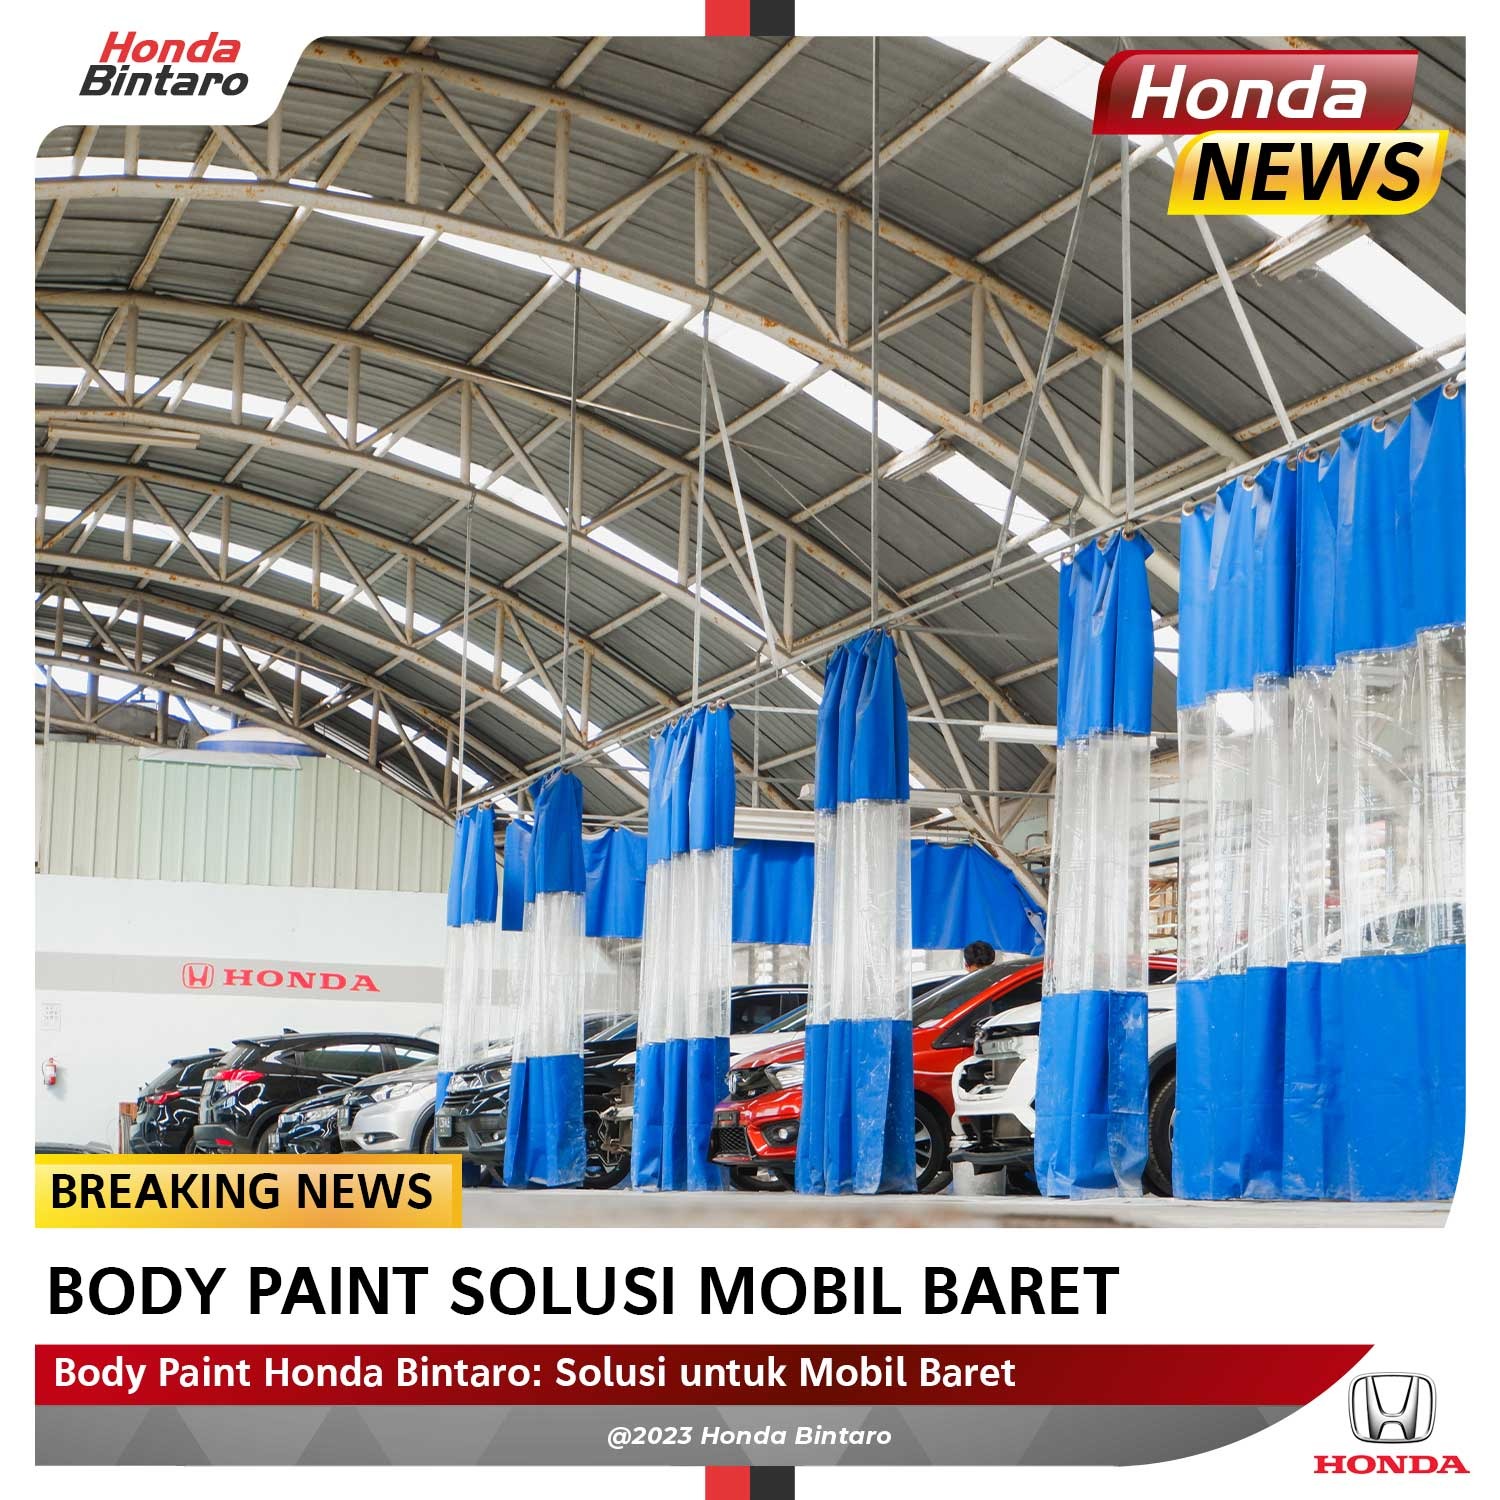 Body Paint Honda Bintaro: Solusi untuk Mobil Baret